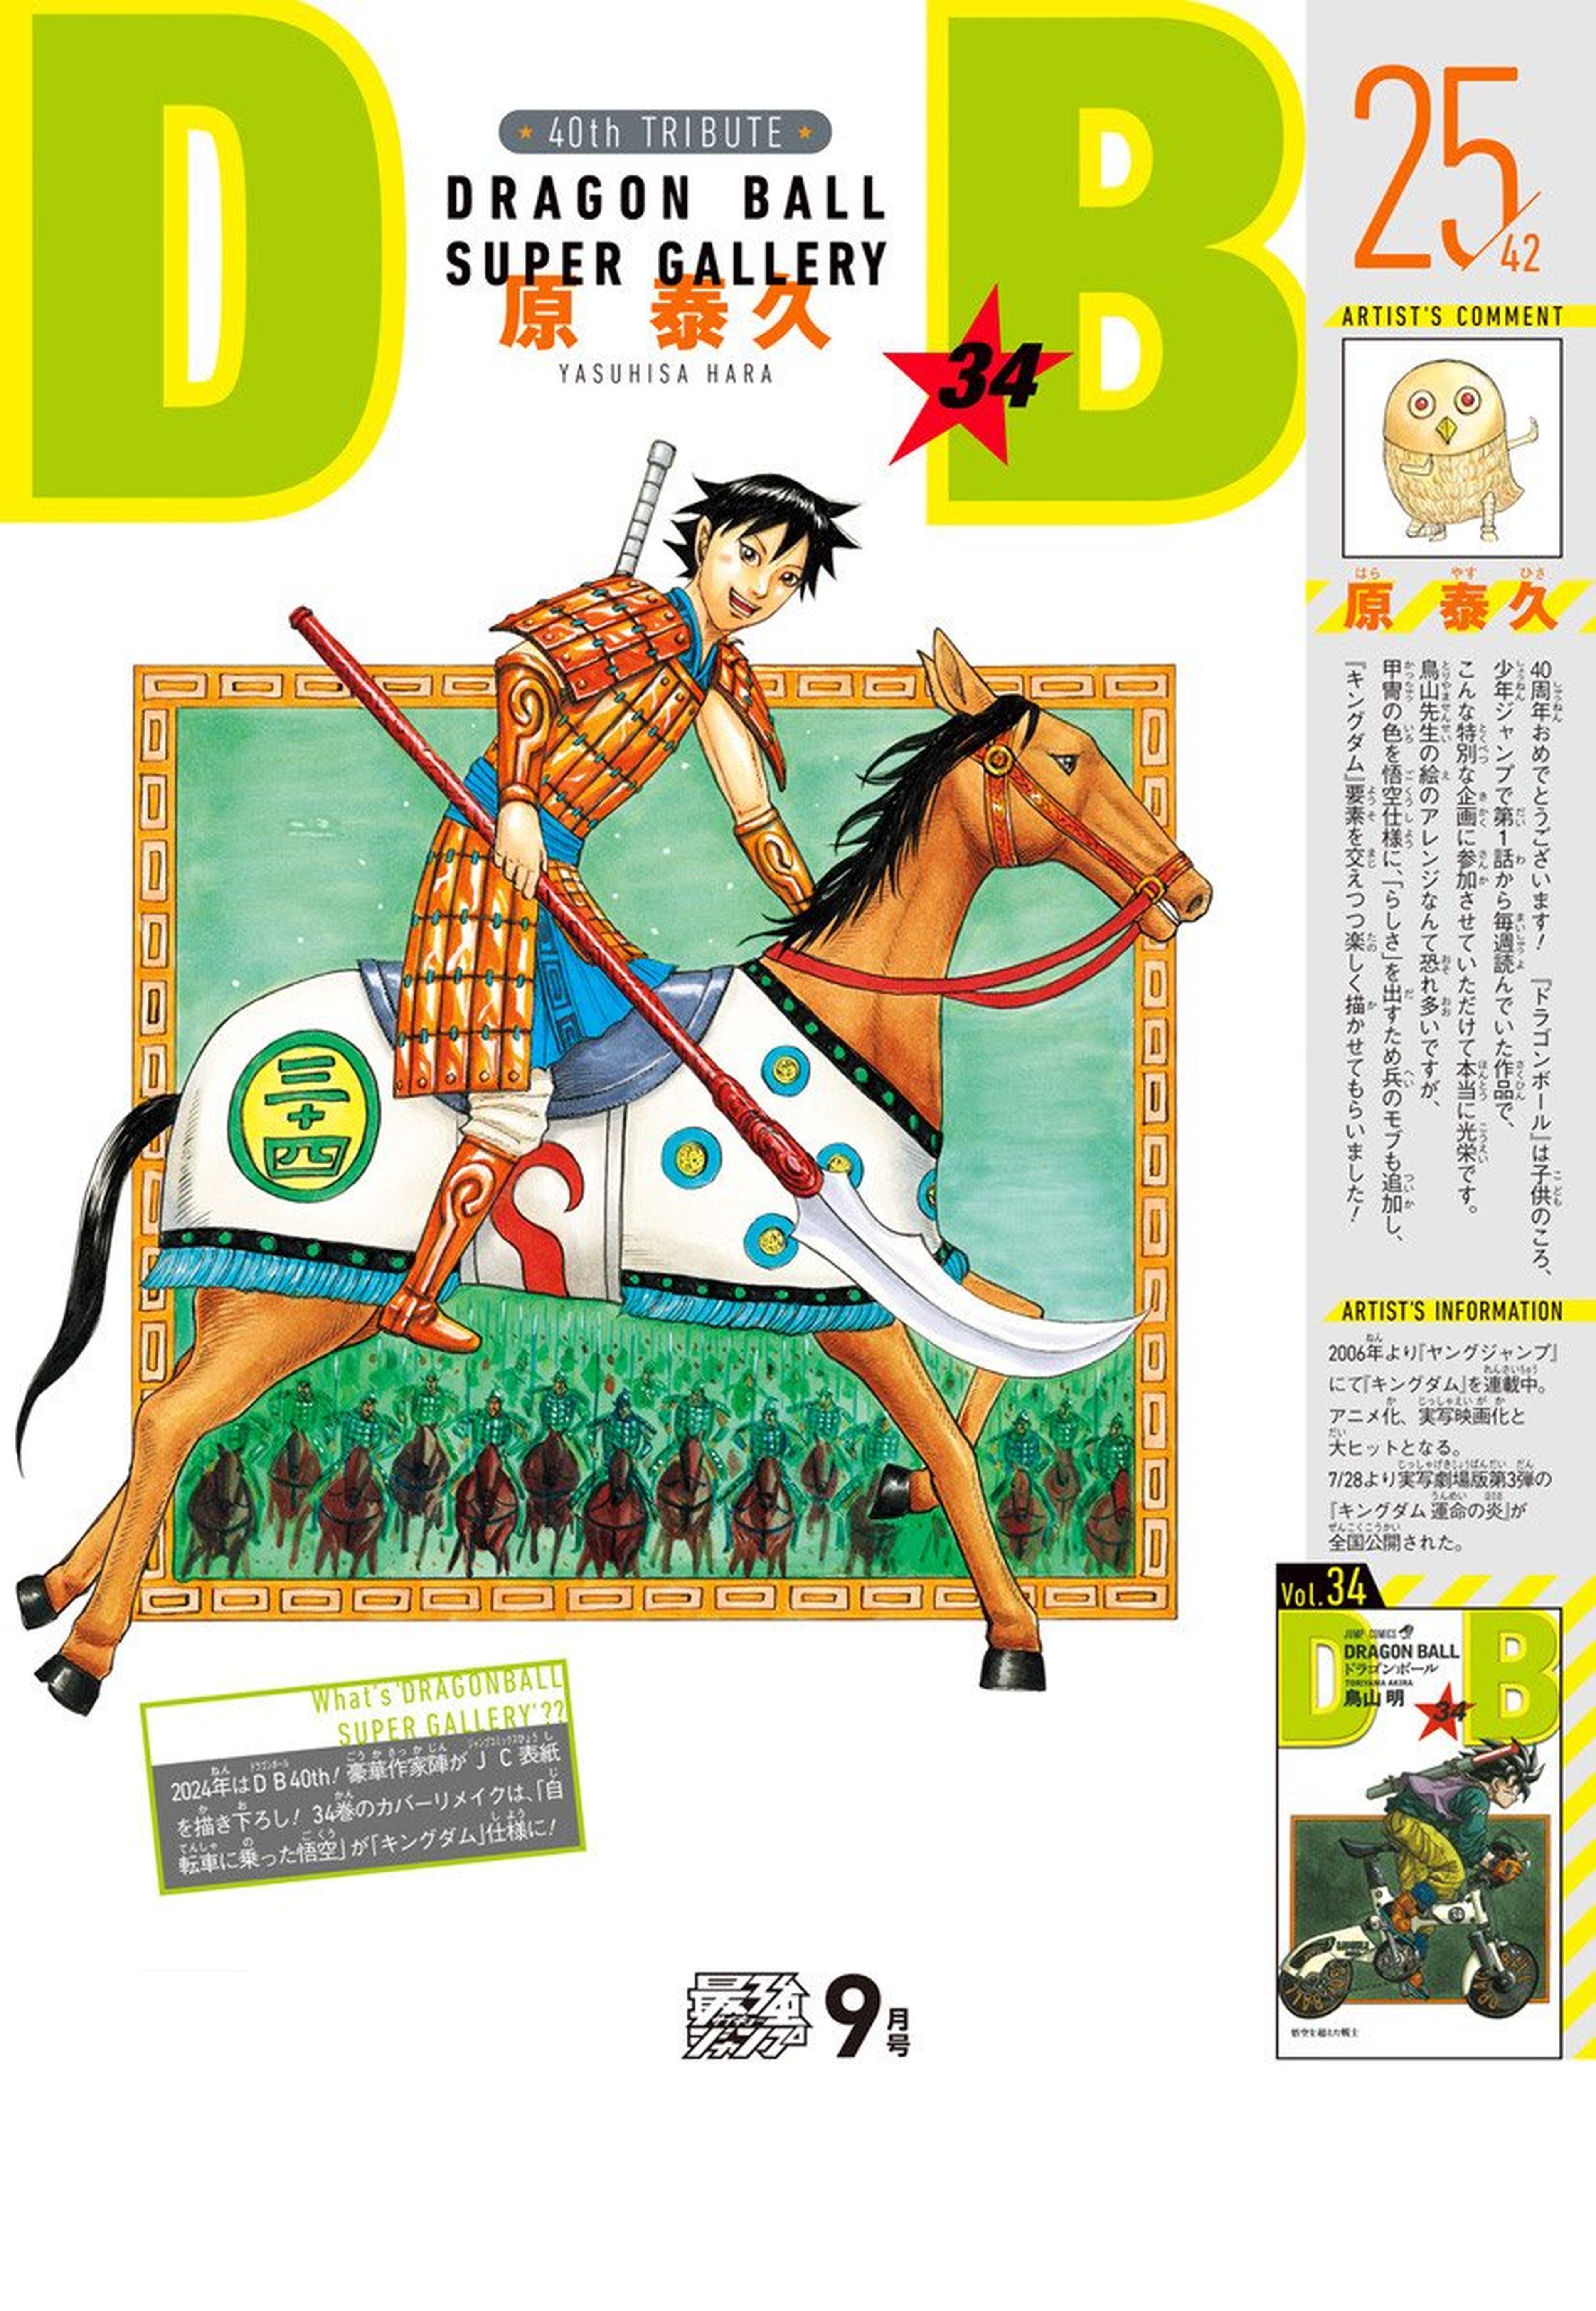 Dragon Ball - Yasuhisa Hara, autor de Kingdom, recrea una de las portadas originales de la serie manga de Akira Toriyama con una libertad que asusta